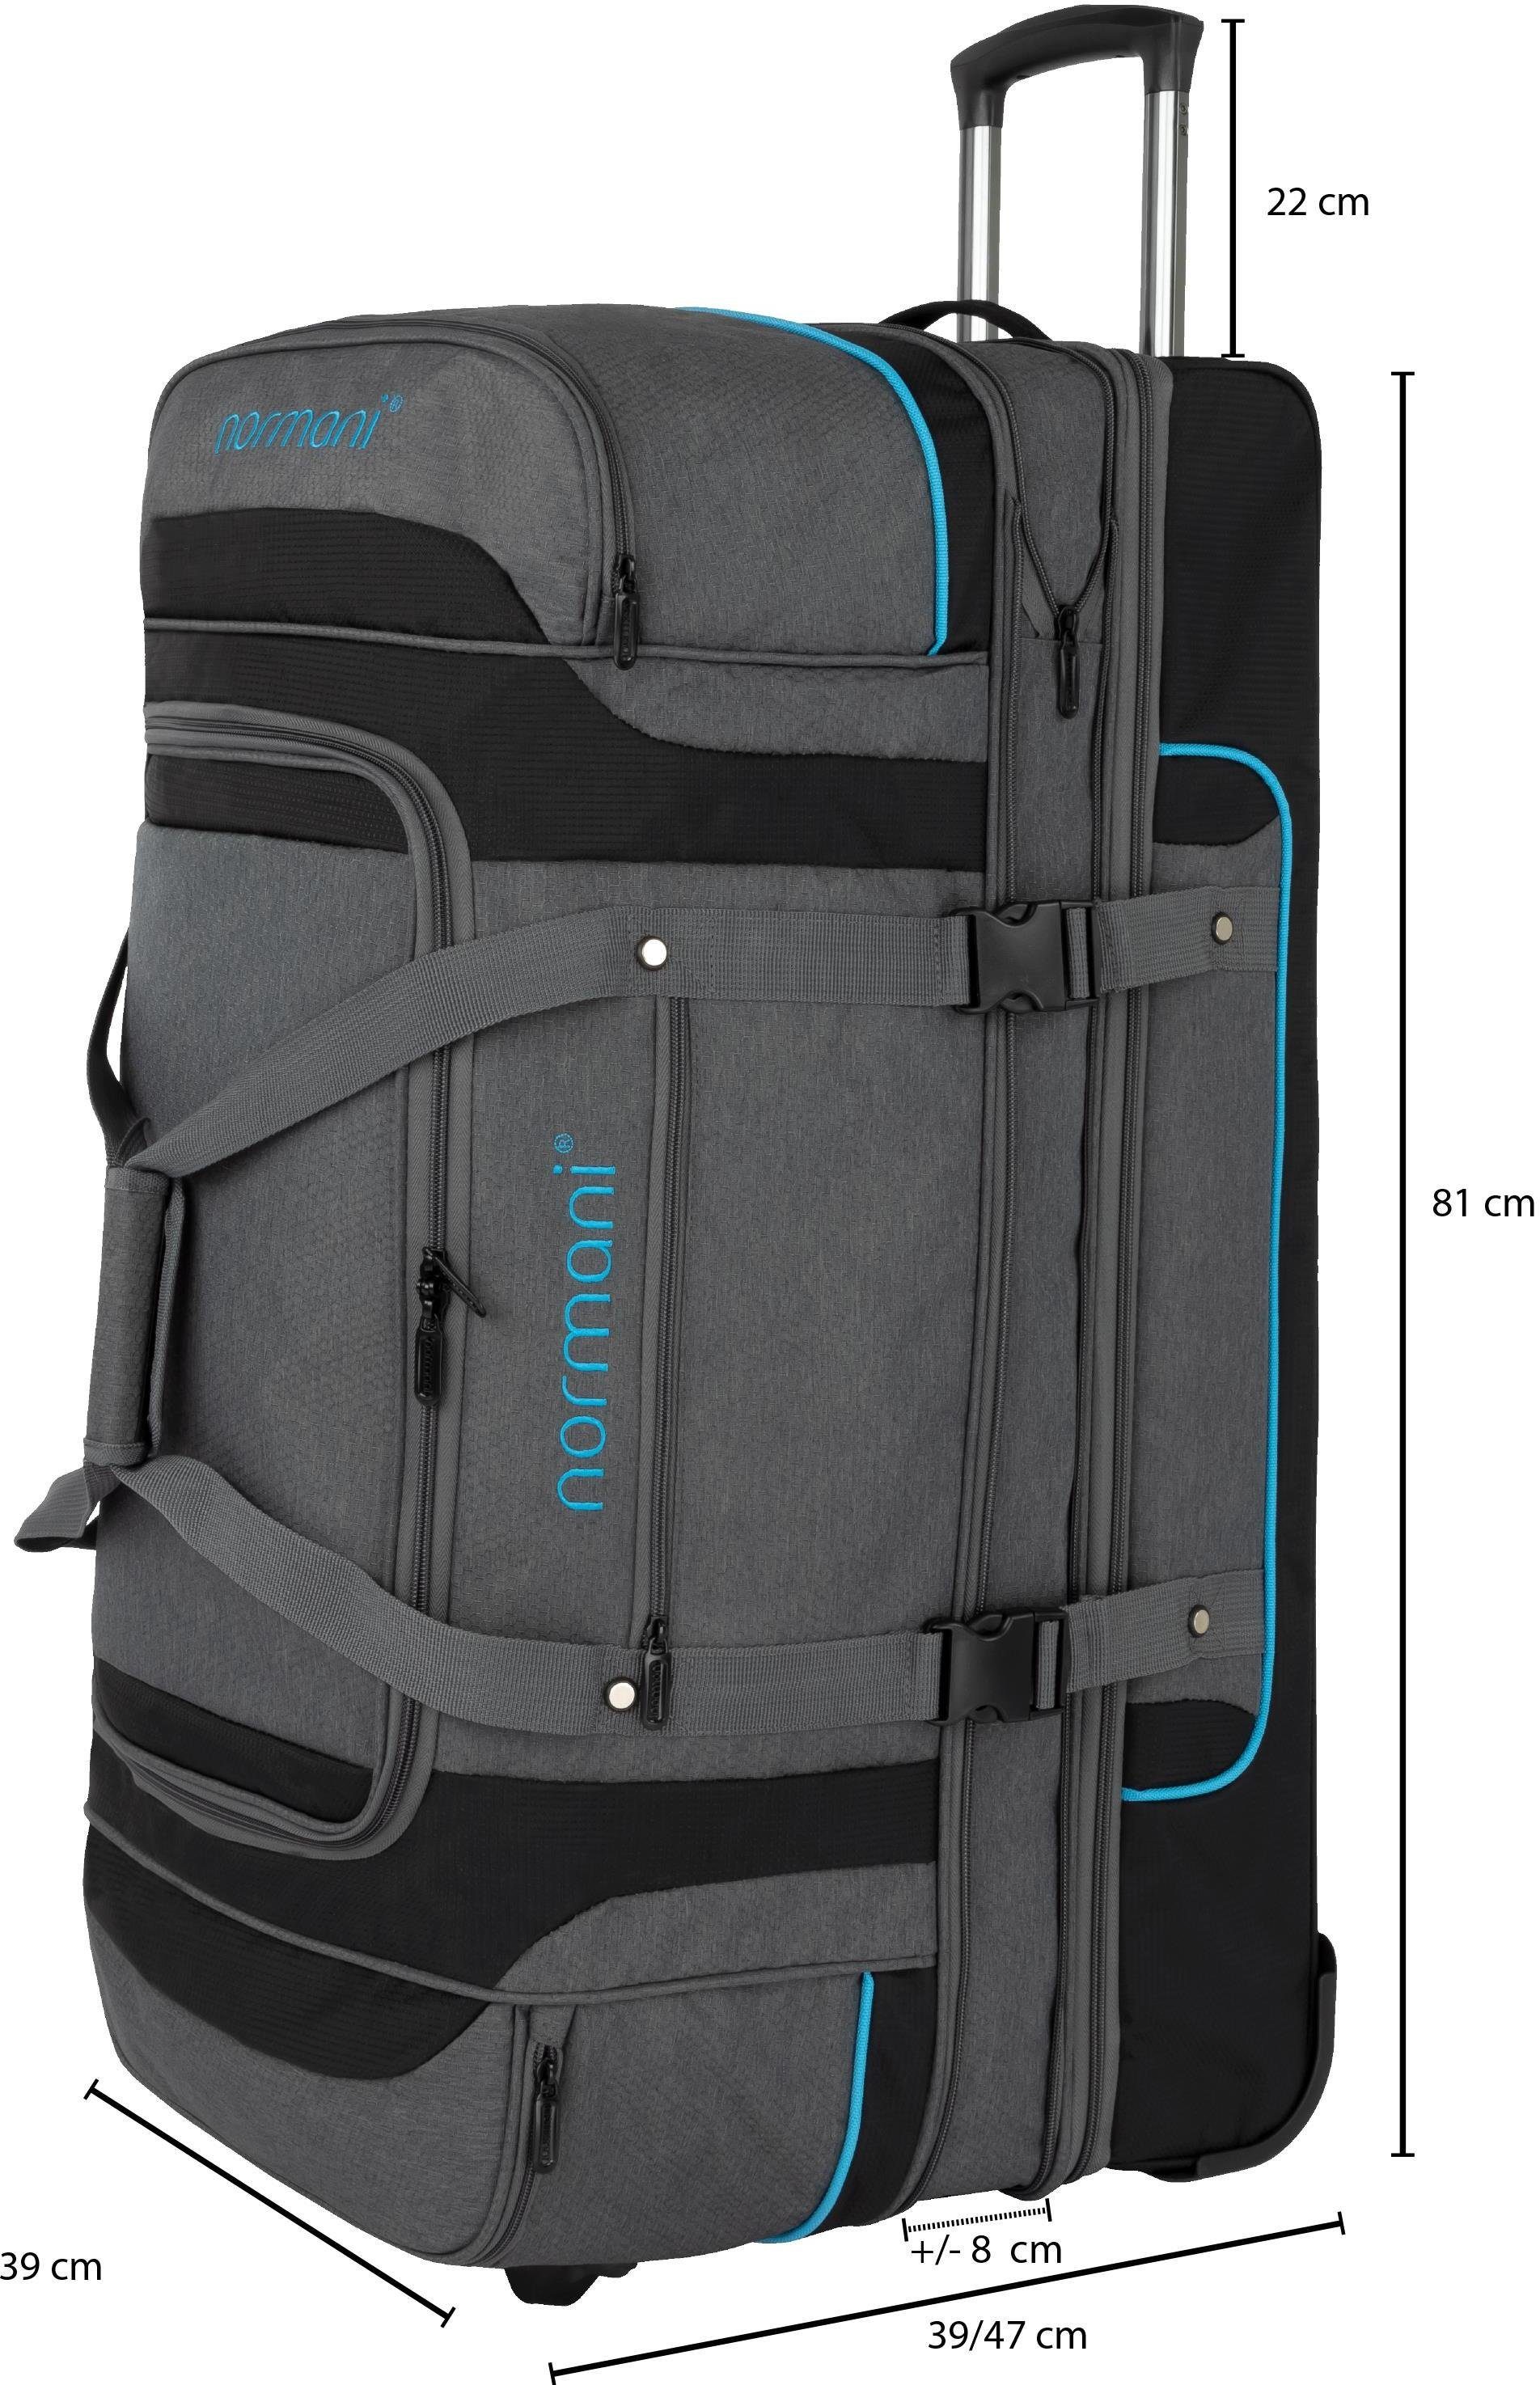 Reisetasche normani 150 Liter auf 120-150 von Reisetrolley Reisetasche Grau/Blau Gigaro, 120 erweiterbar L